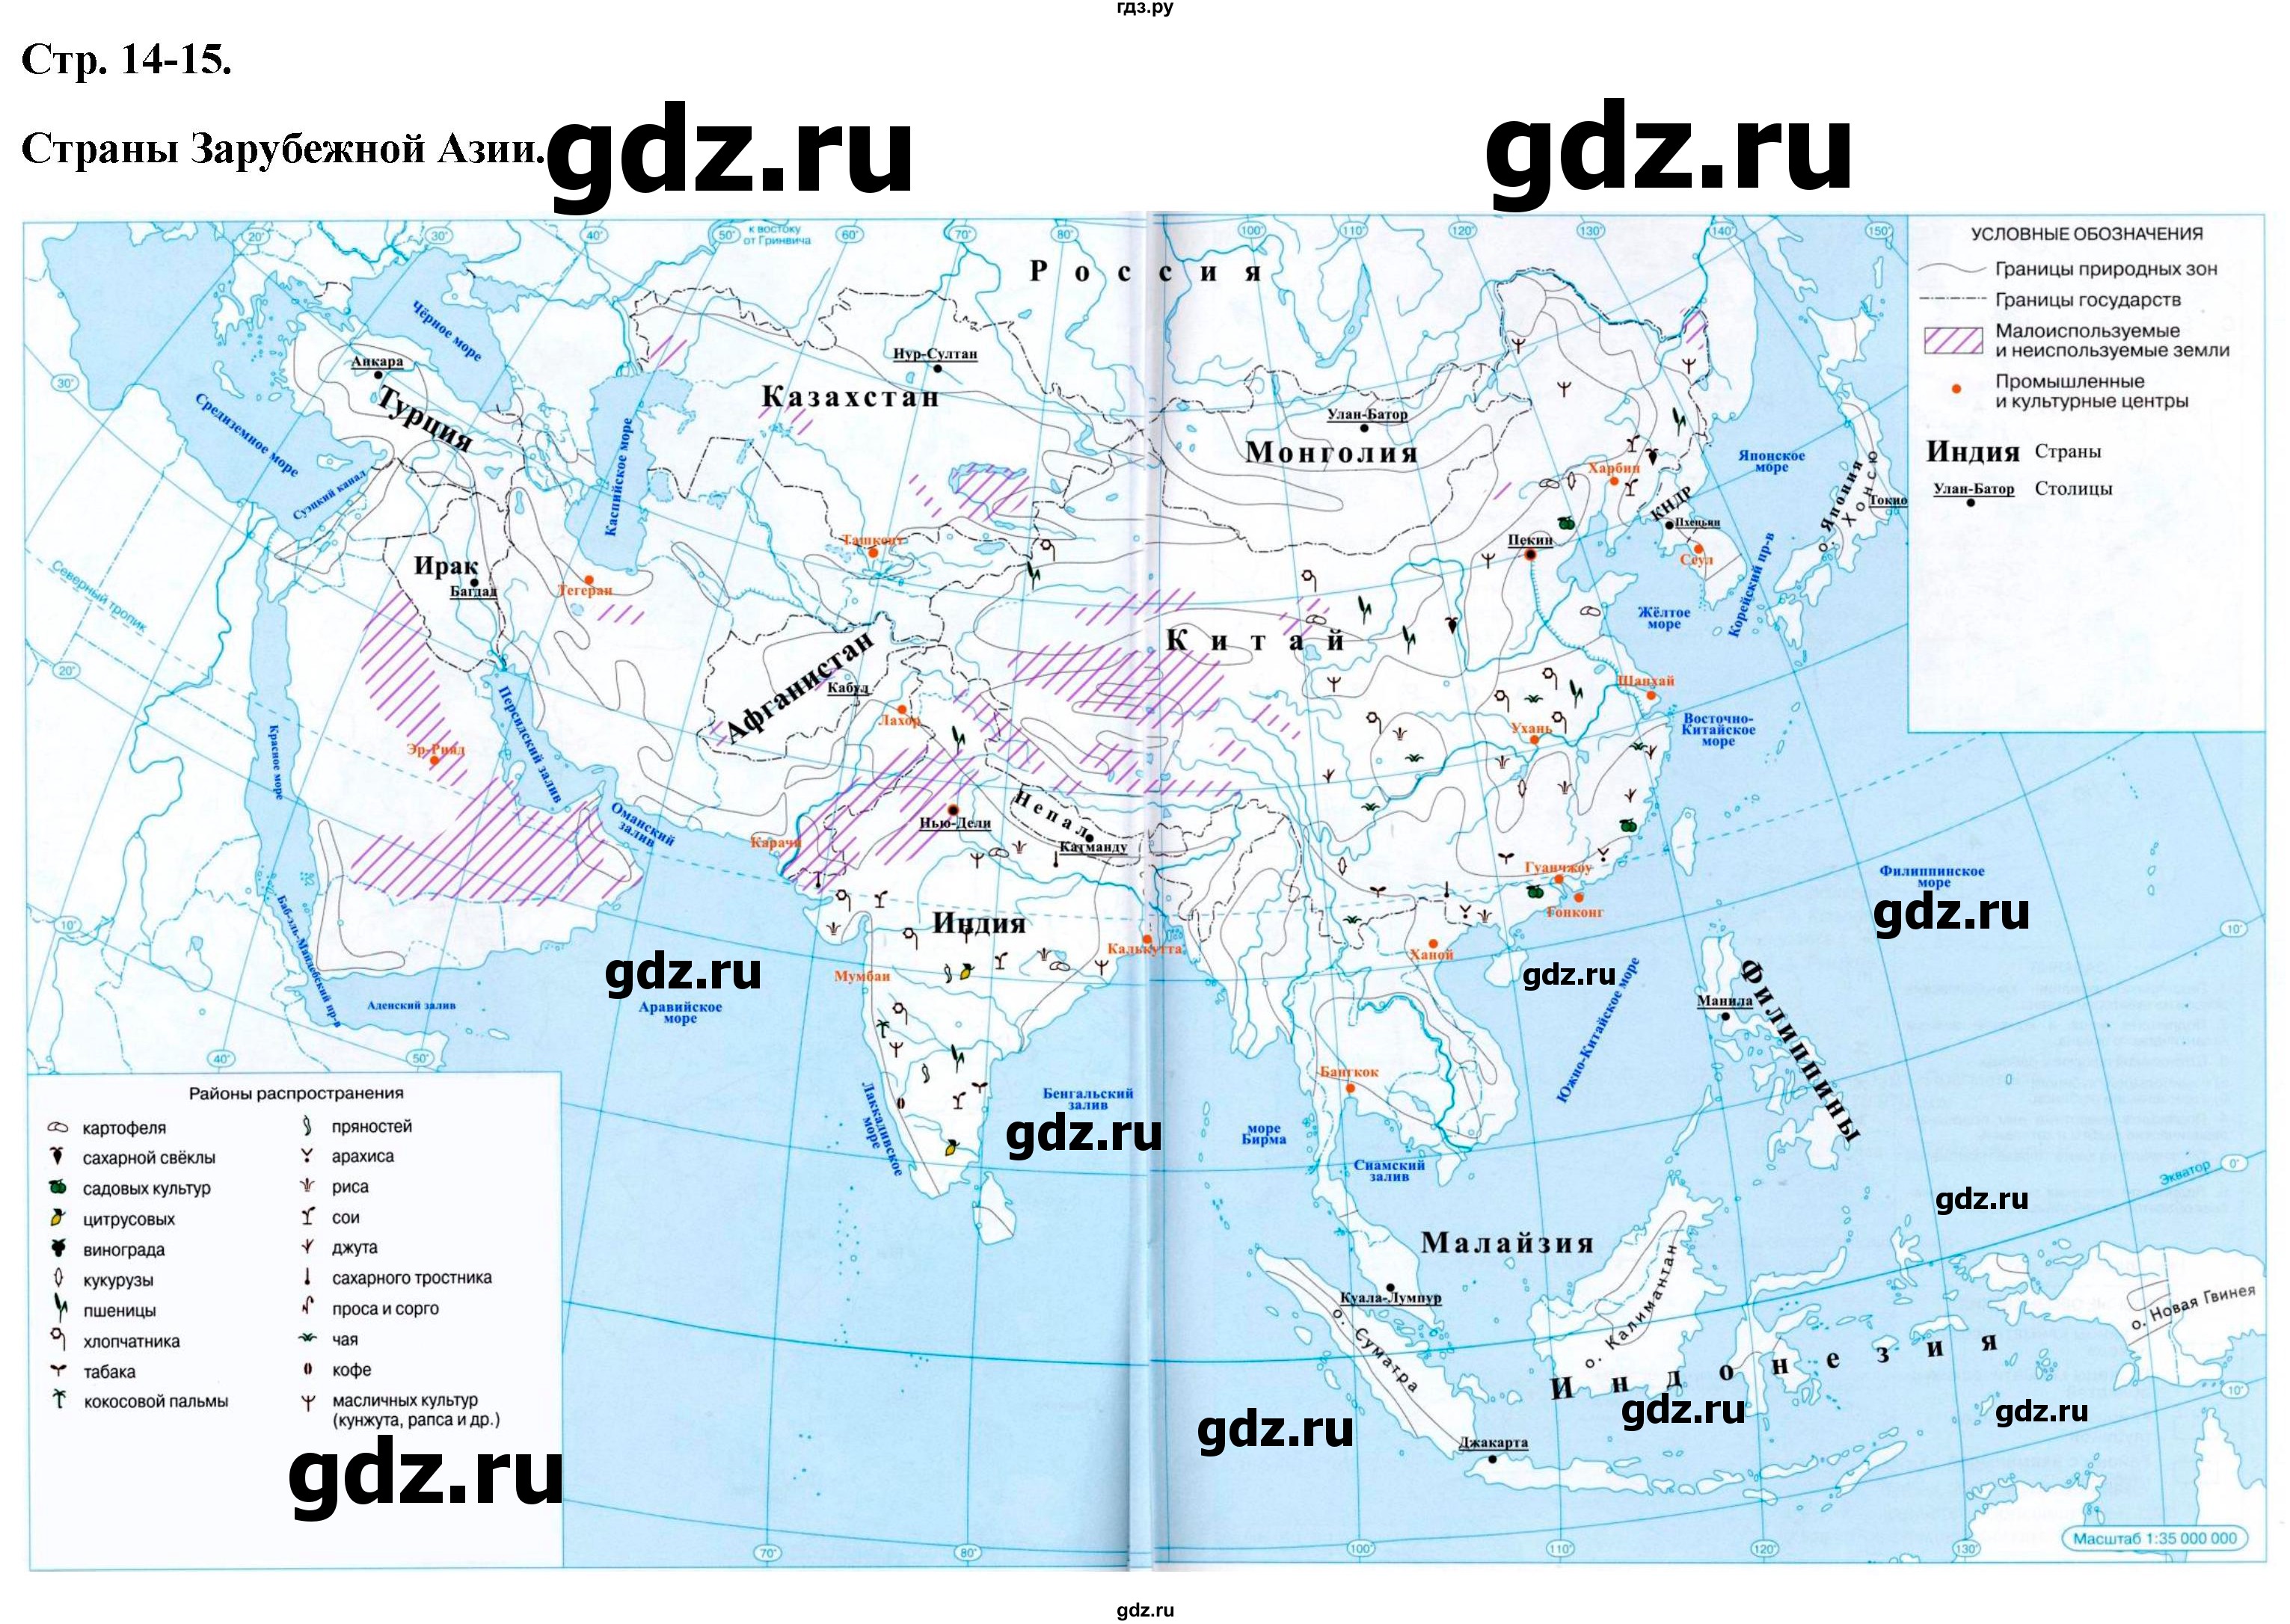 ГДЗ контурные карты стр.14-15 география 7 класс атлас с контурными картамиКурбский